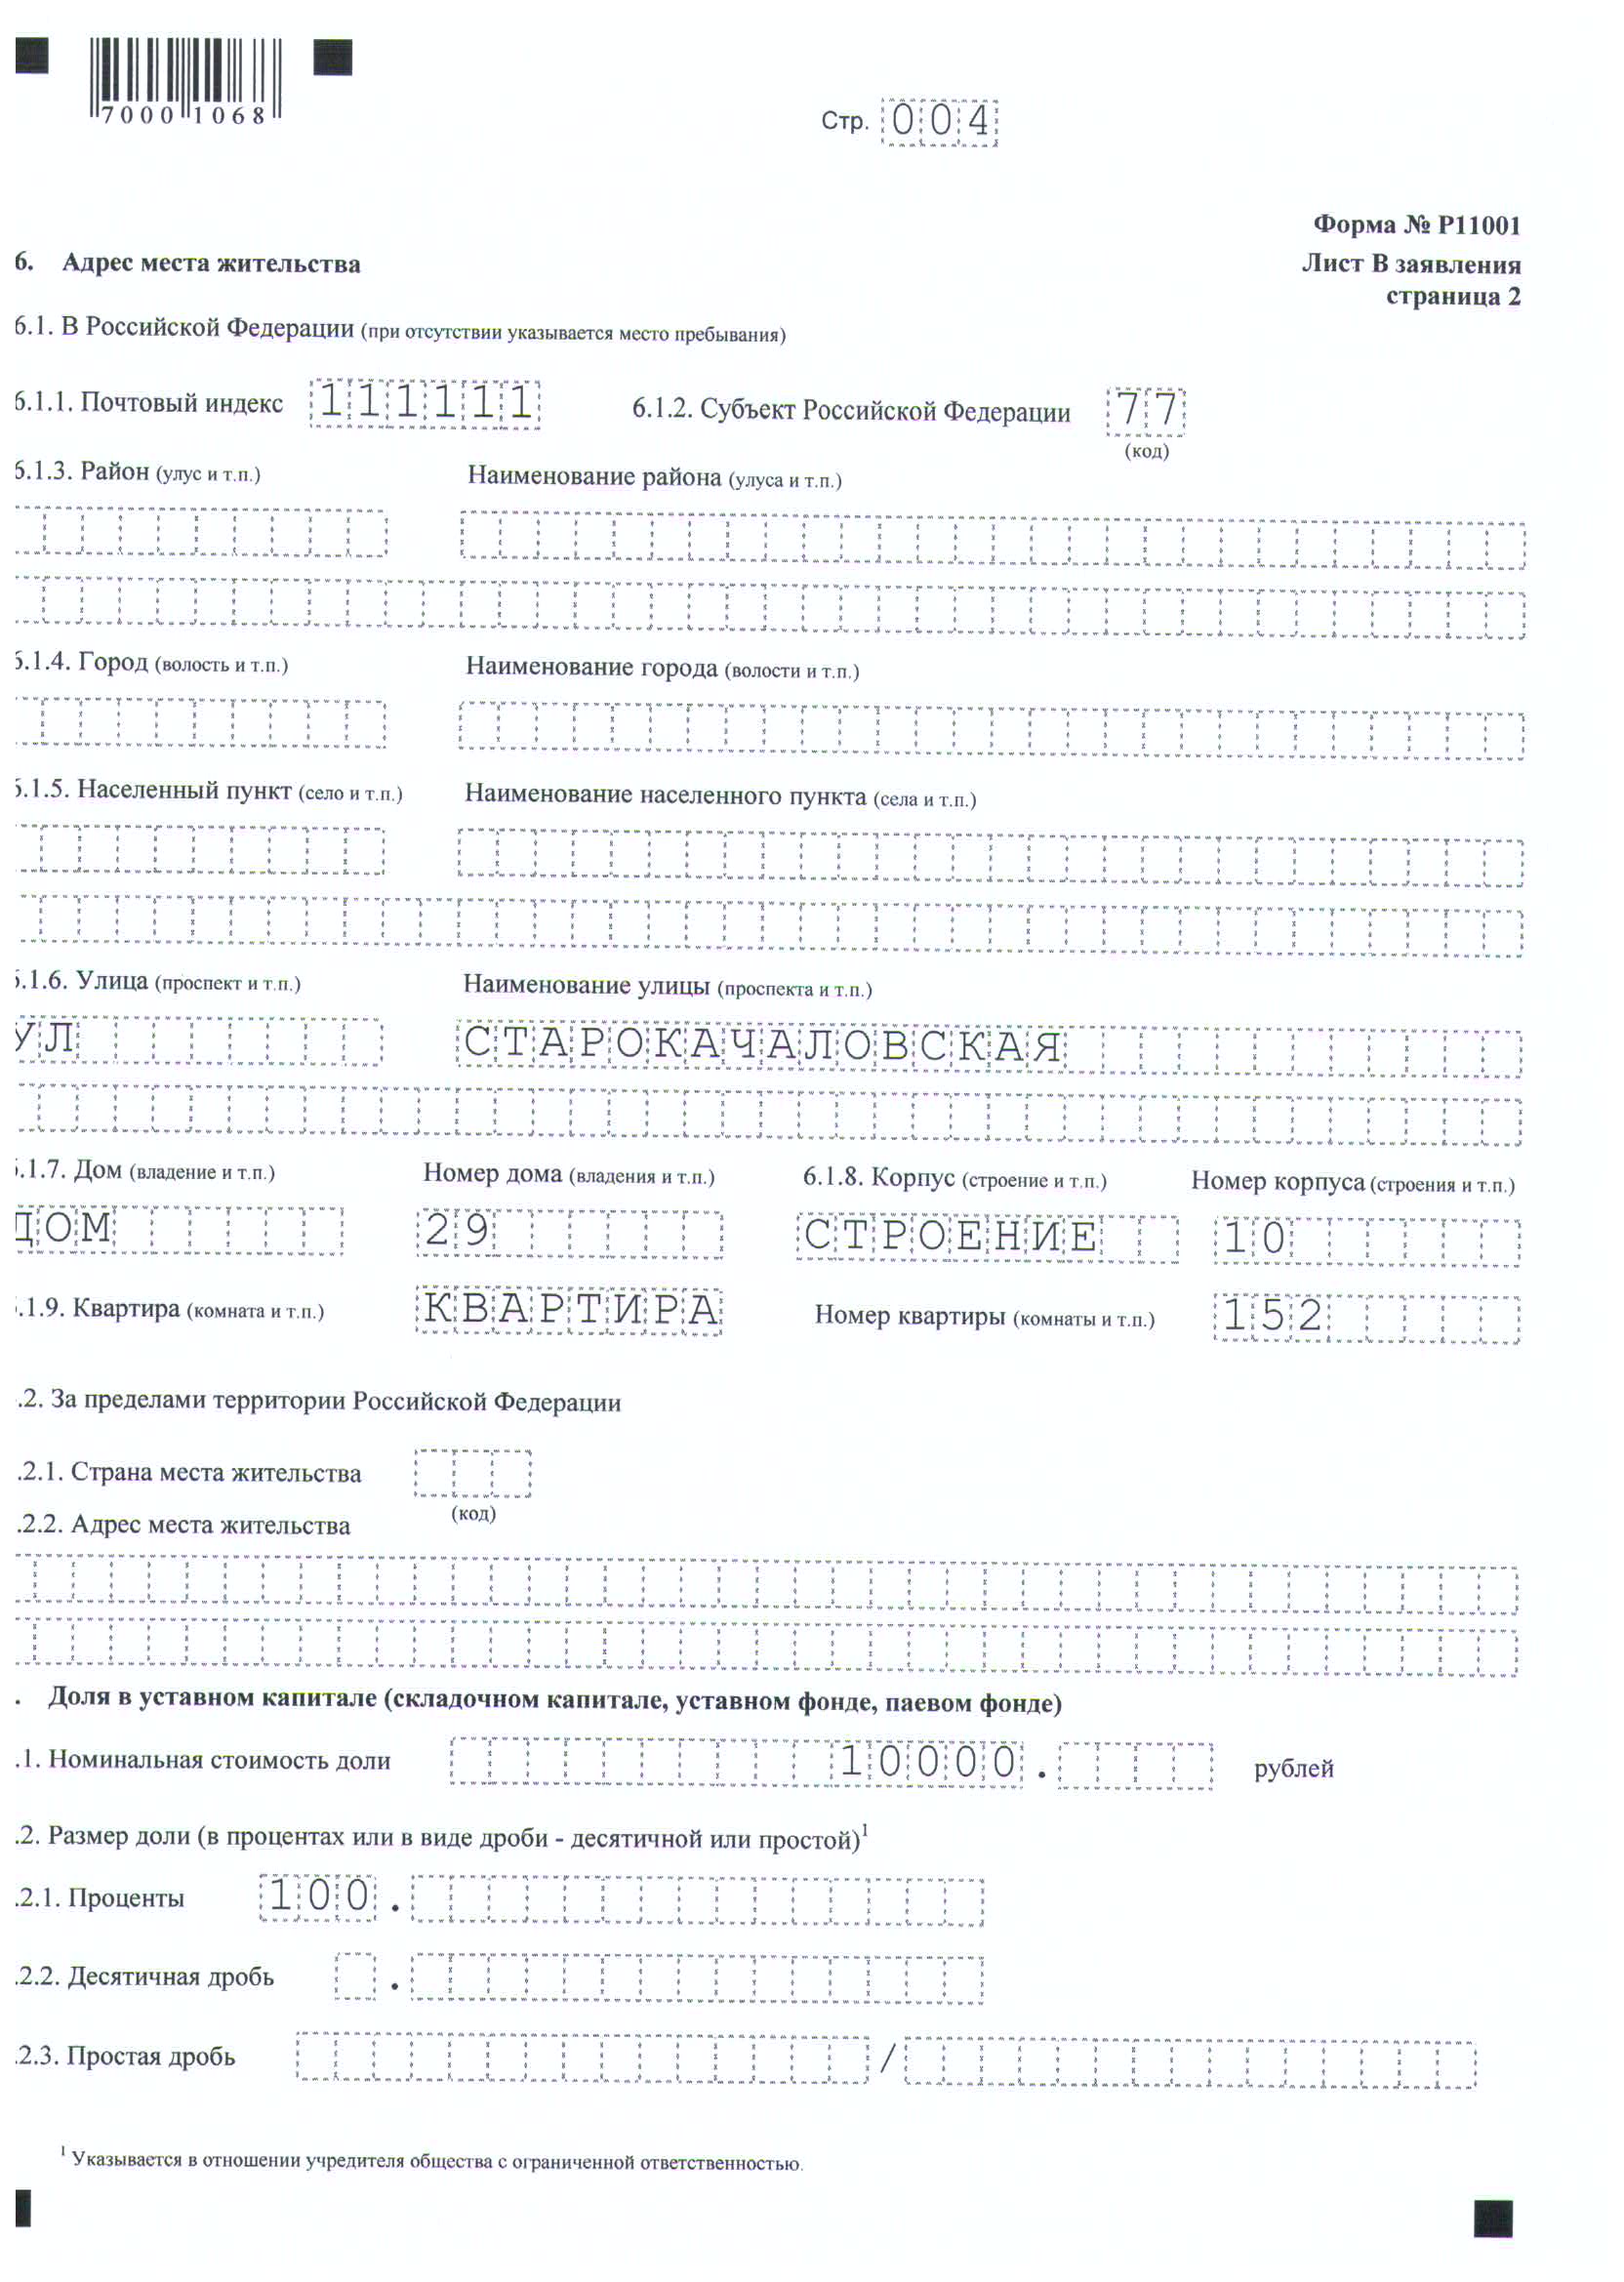 Заявка на регистрацию товарного знака образец заполнения